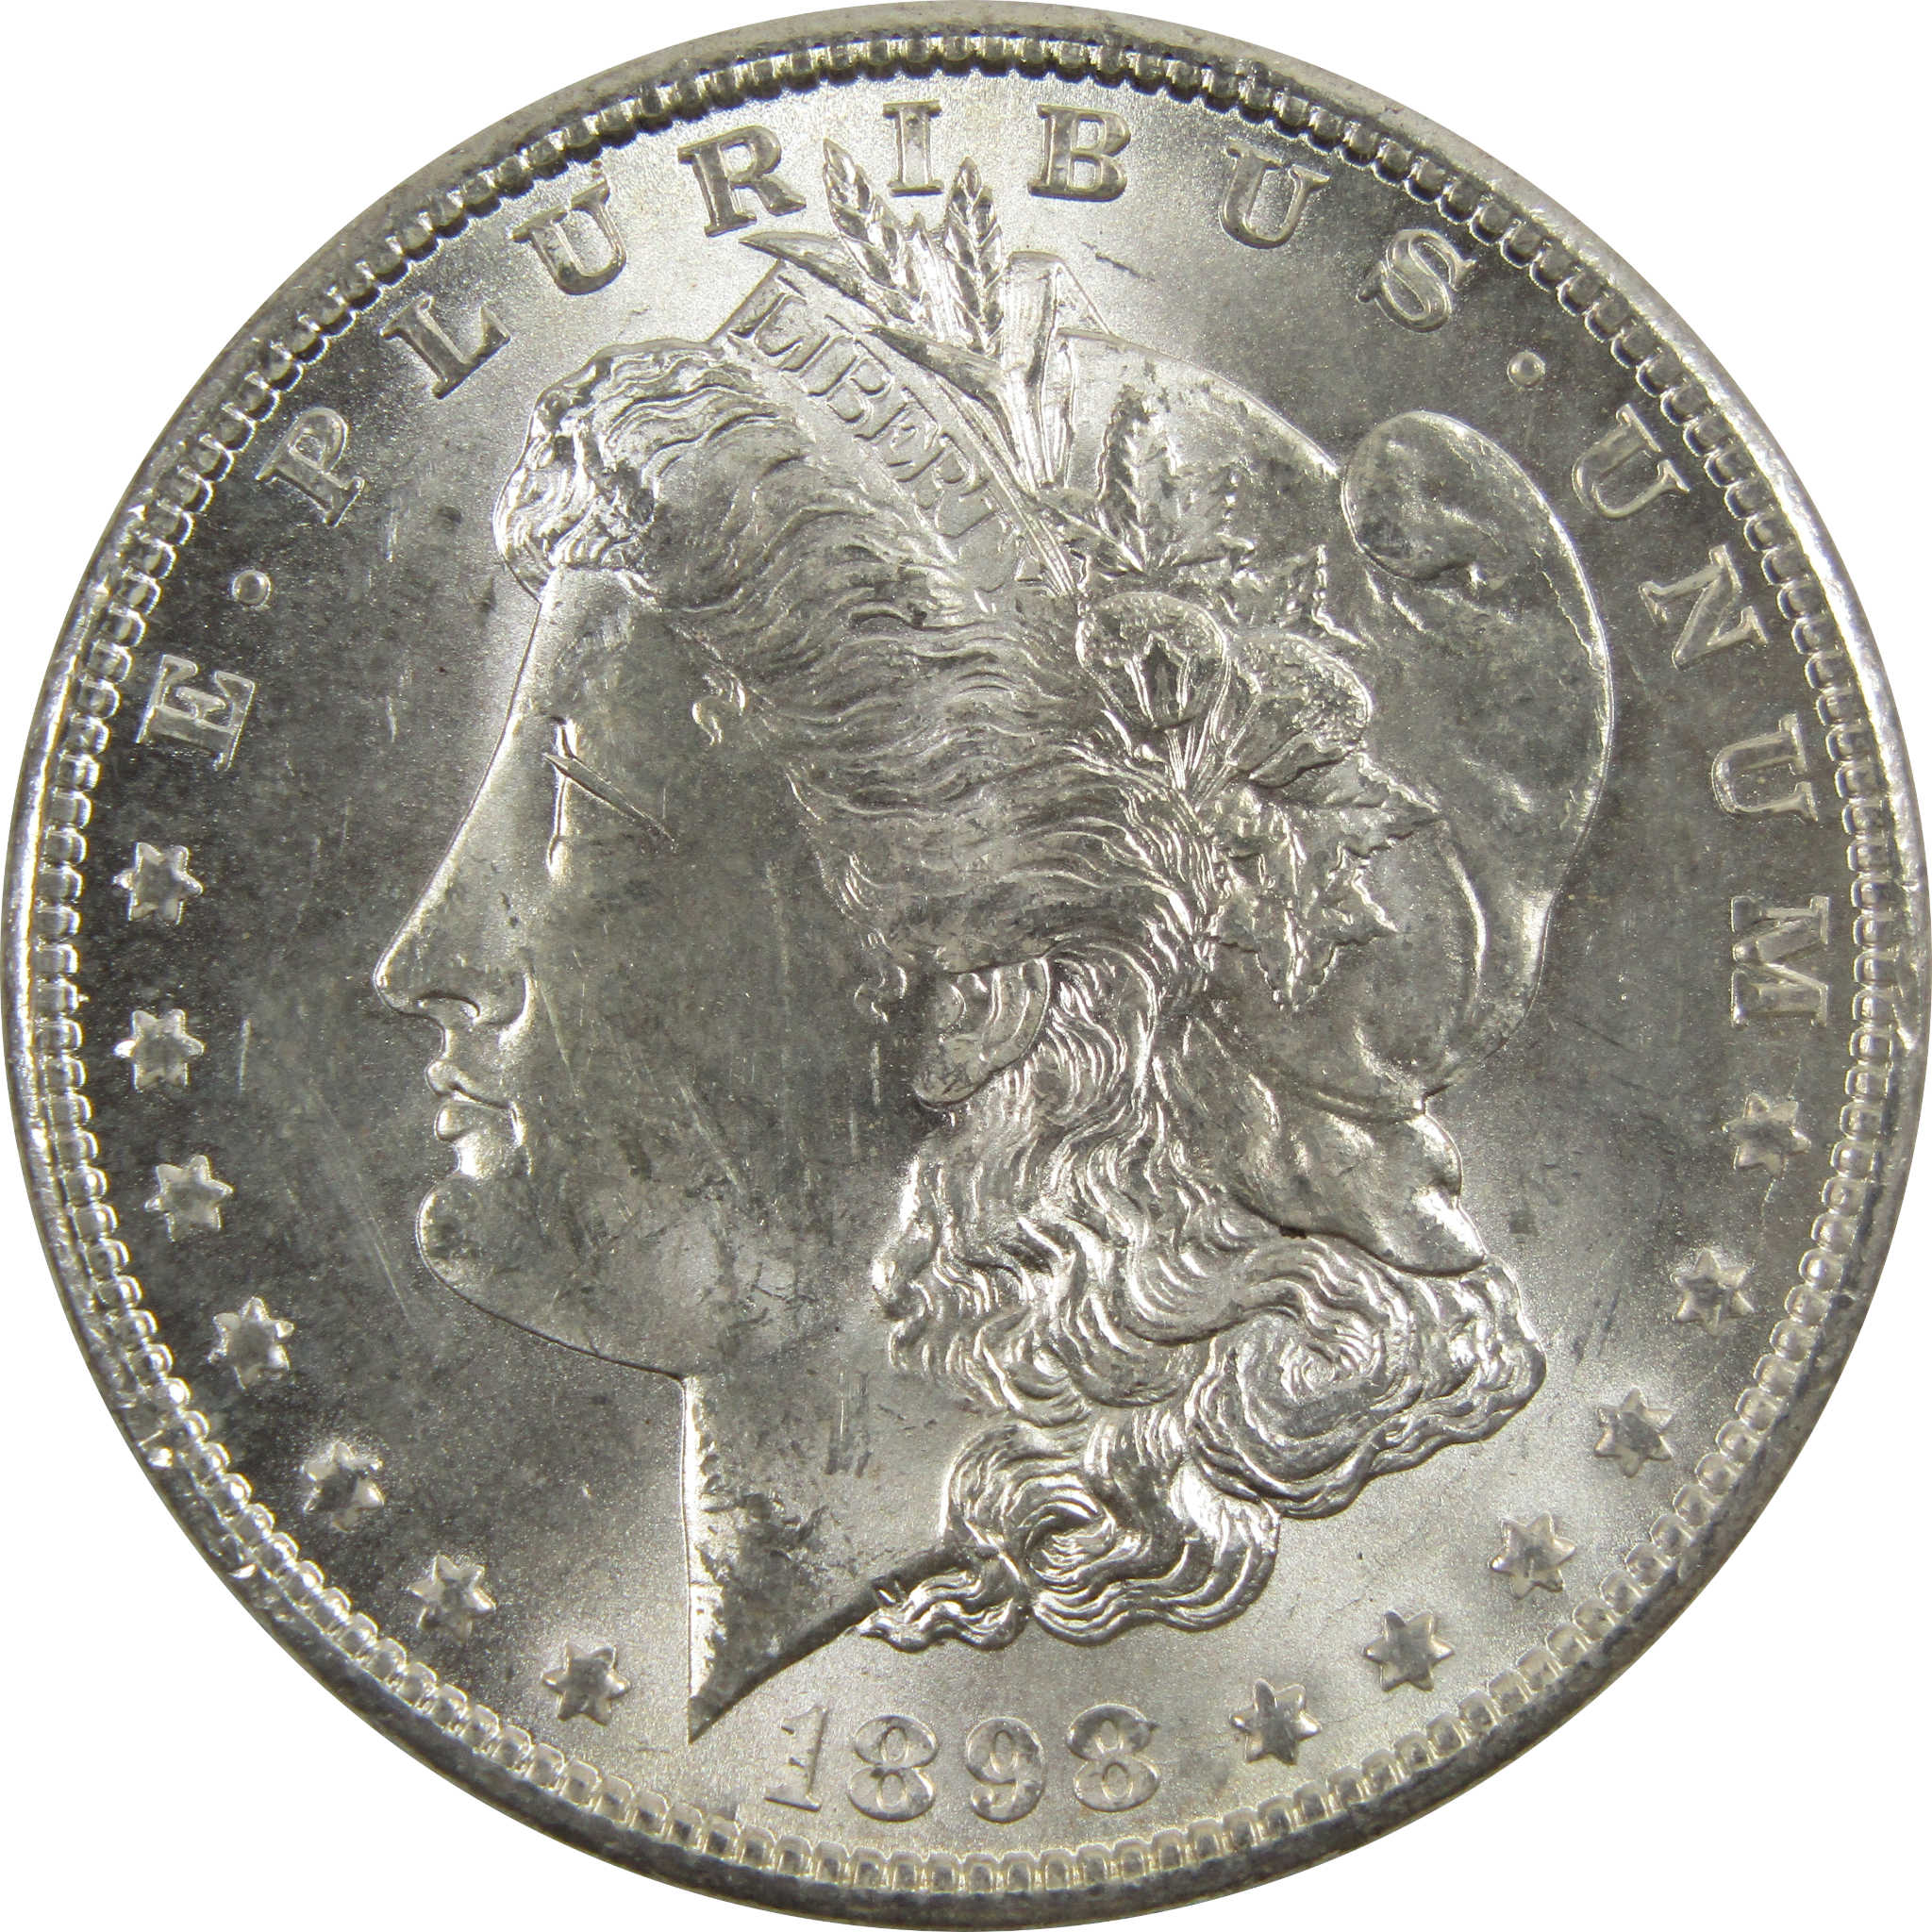 1898 O Morgan Dollar BU Uncirculated 90% Silver $1 Coin SKU:I5263 - Morgan coin - Morgan silver dollar - Morgan silver dollar for sale - Profile Coins &amp; Collectibles